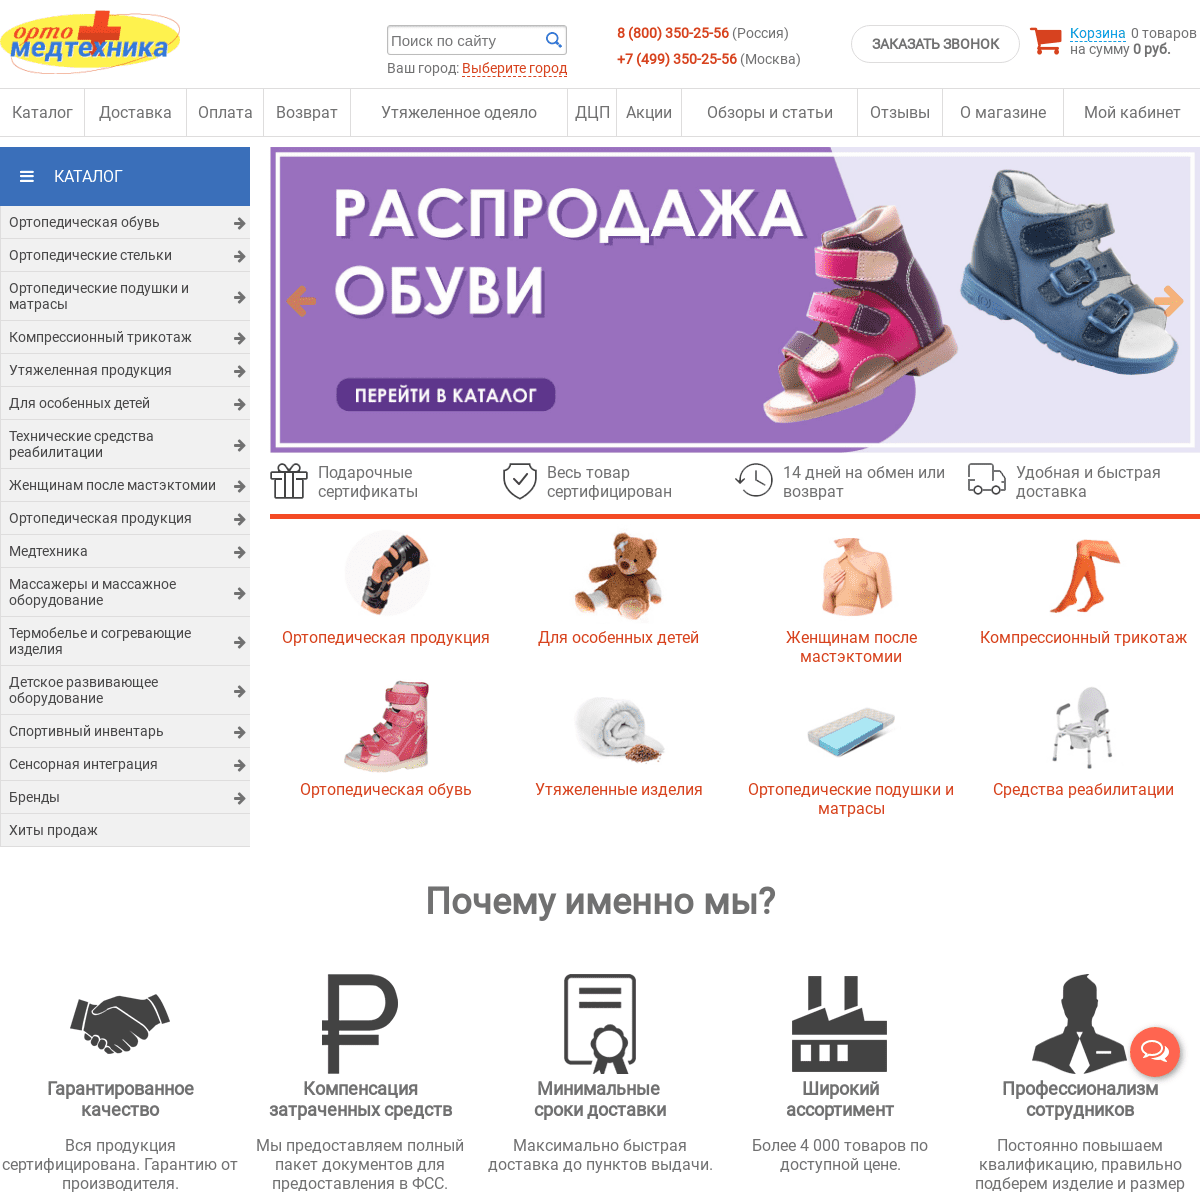 A complete backup of ortomedtehnika.ru